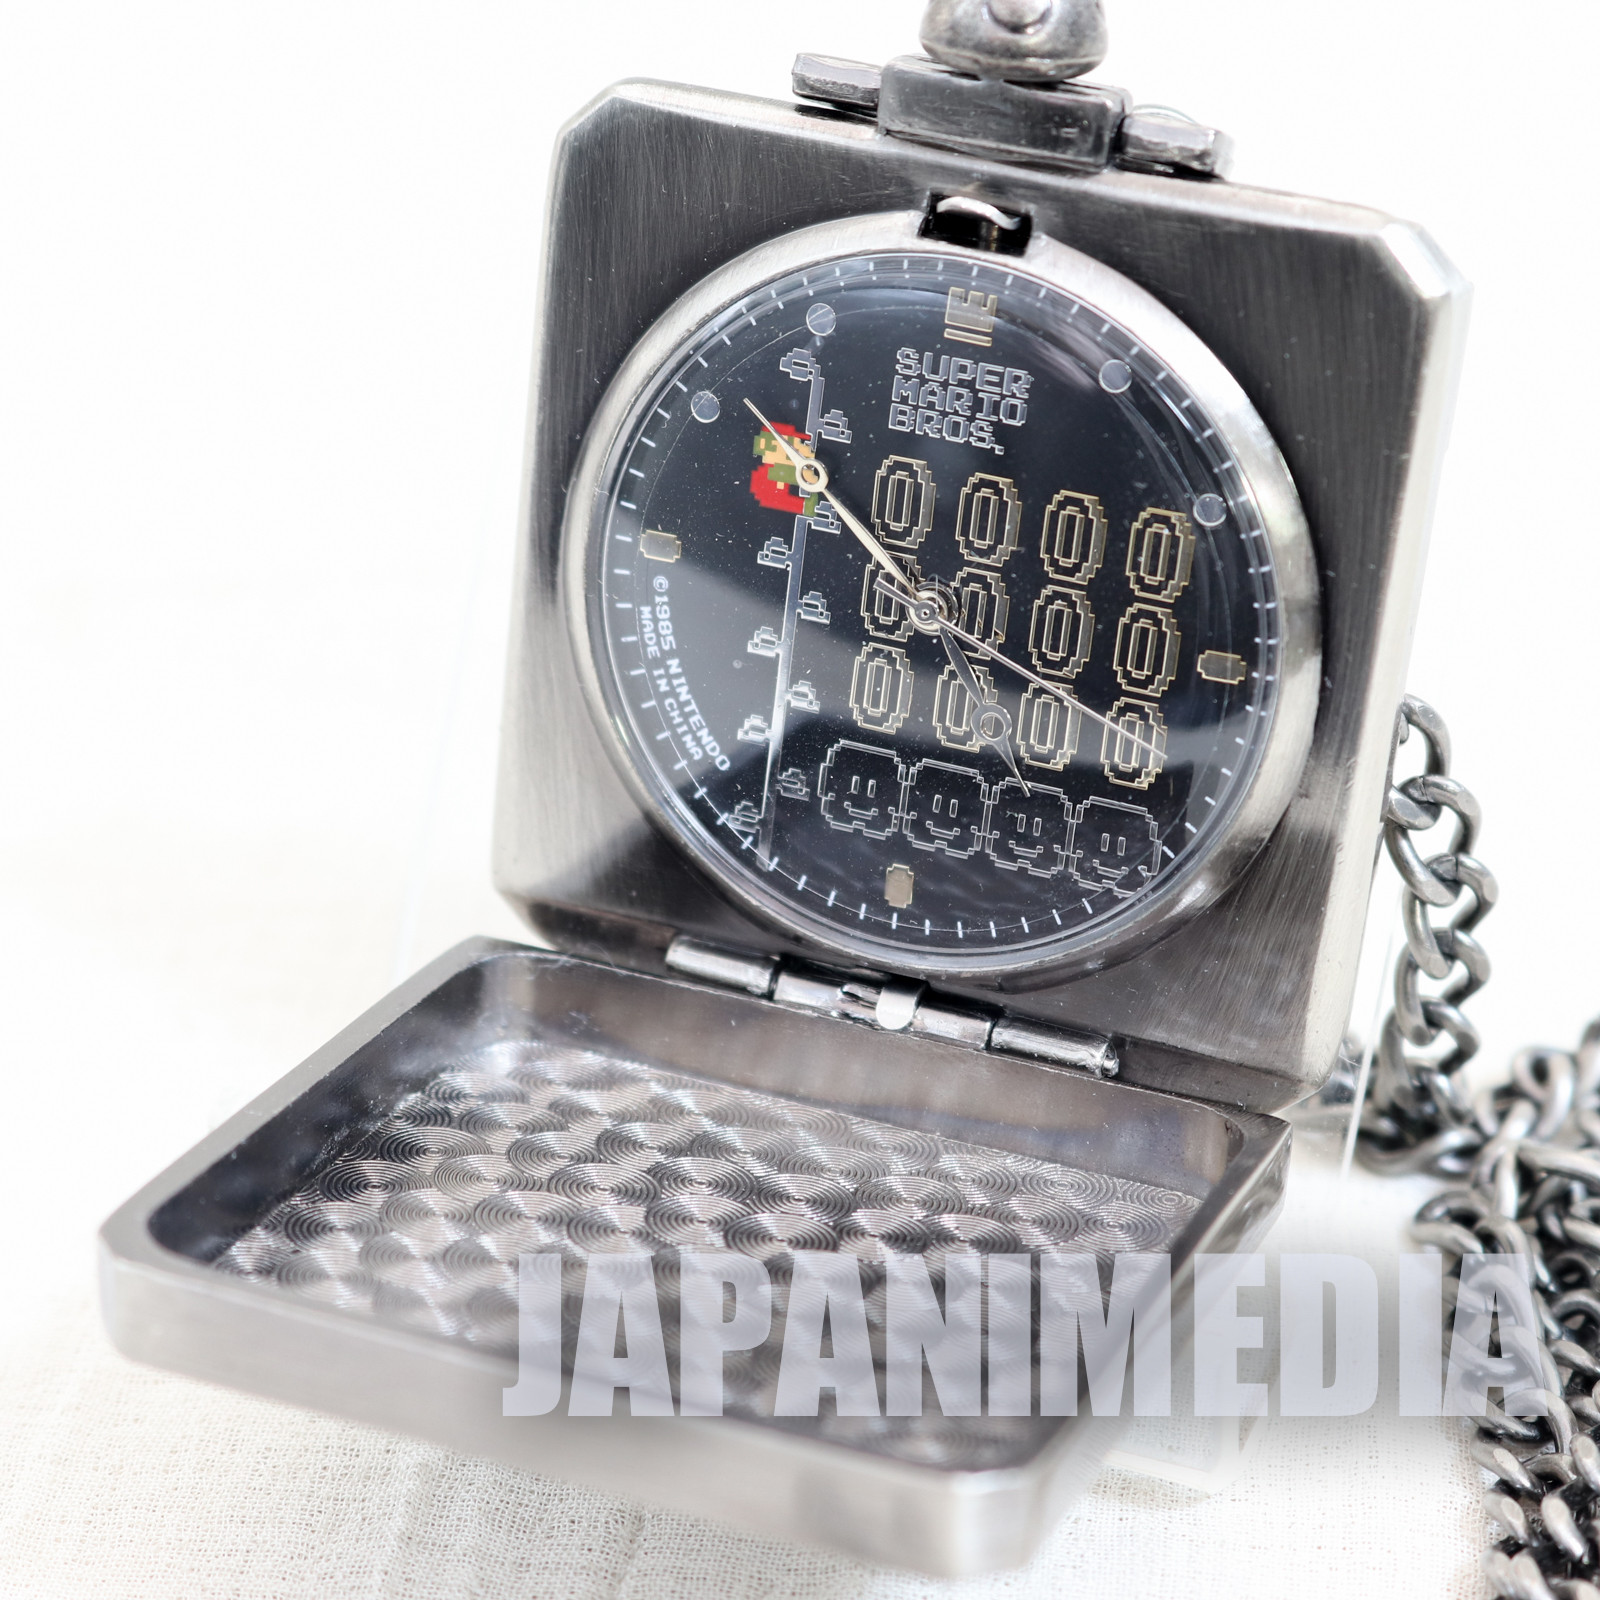 Super Mario Bros. Hatena Block Pocket Watch Mario & Coin Ver. JAPAN NINTENDO